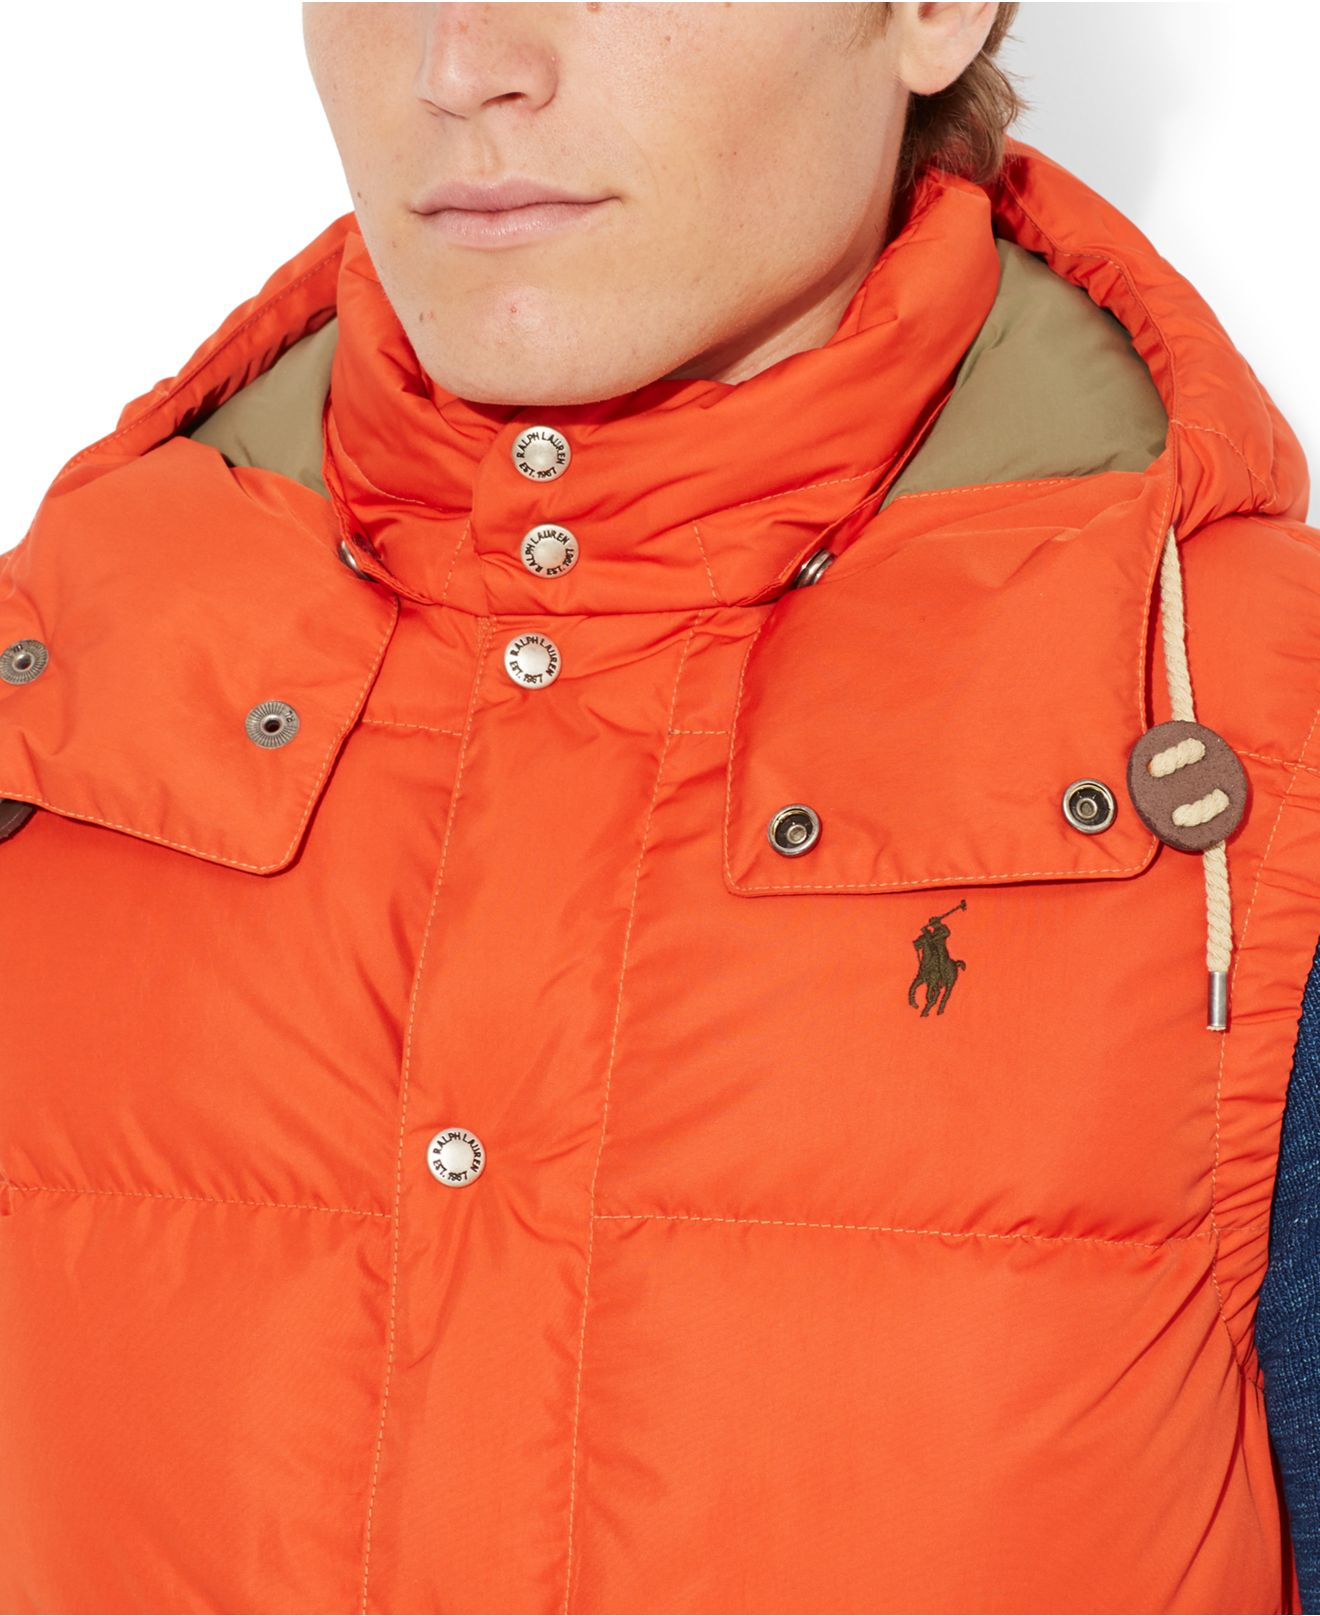 orange polo jacket